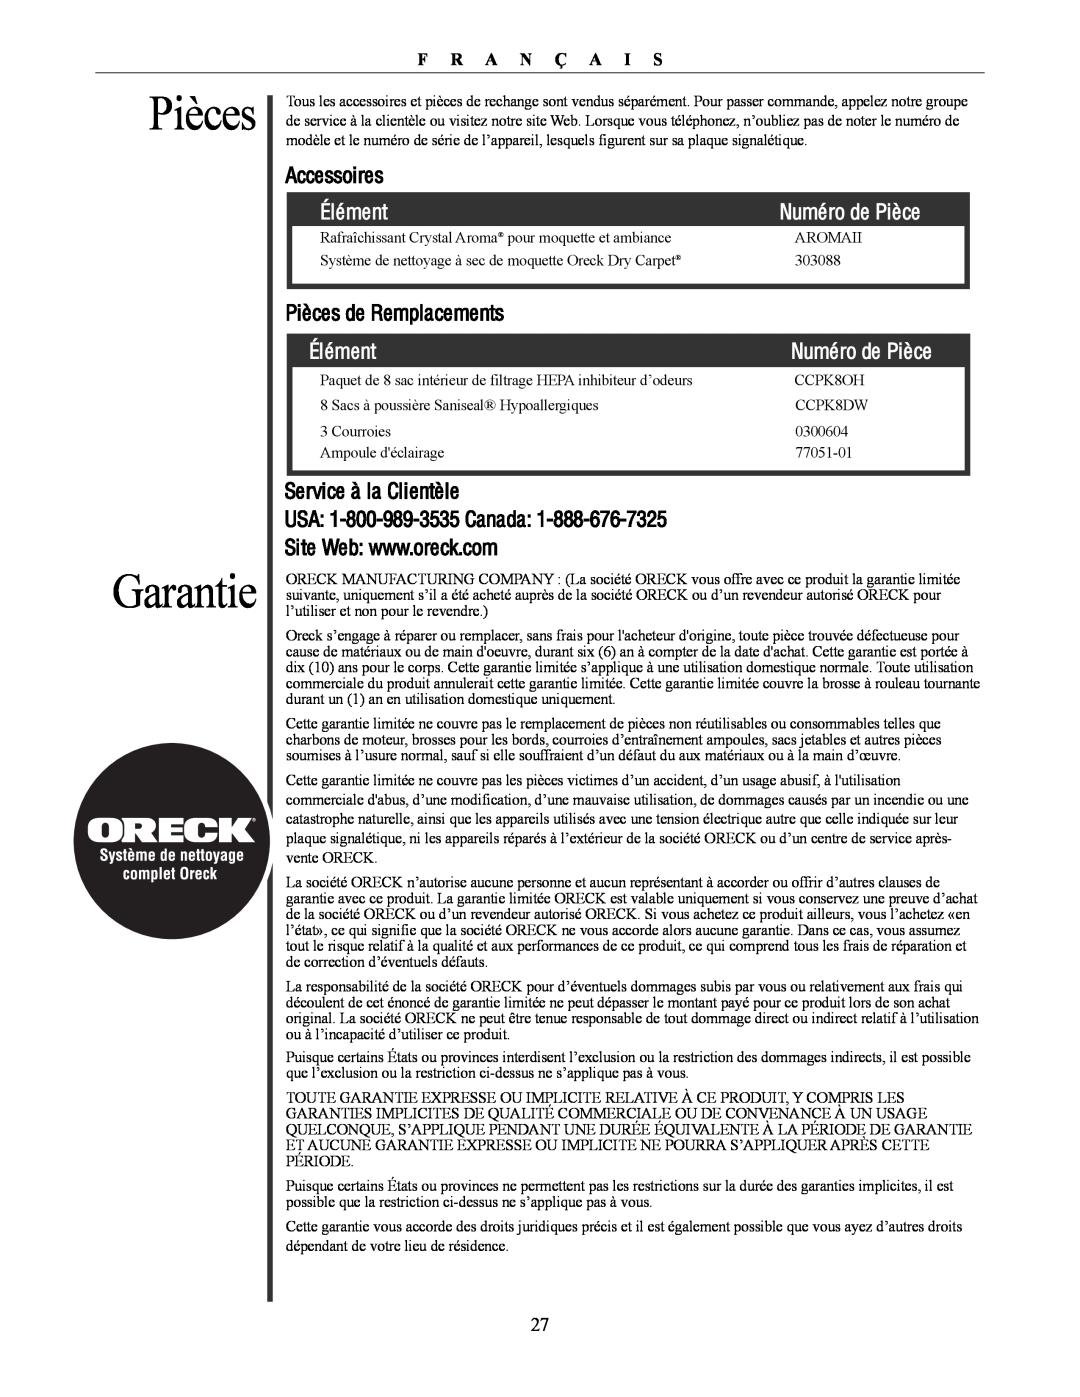 Oreck U4300 manual Pièces Garantie, Élément, Numéro de Pièce, F R A N Ç A I S 